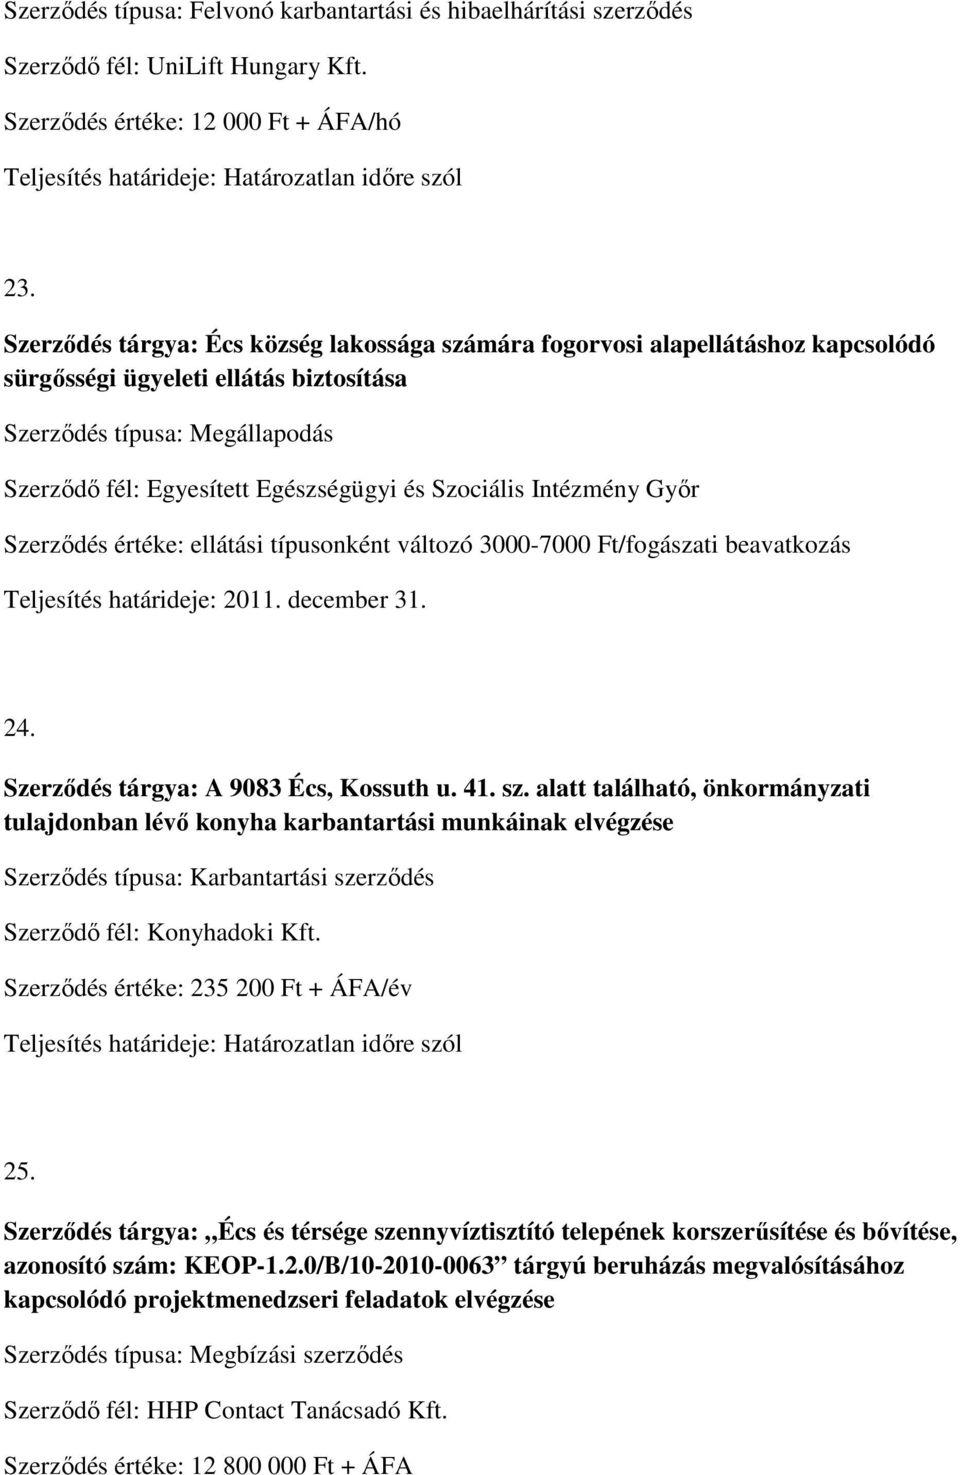 Szociális Intézmény Győr Szerződés értéke: ellátási típusonként változó 3000-7000 Ft/fogászati beavatkozás Teljesítés határideje: 2011. december 31. 24. Szerződés tárgya: A 9083 Écs, Kossuth u. 41.